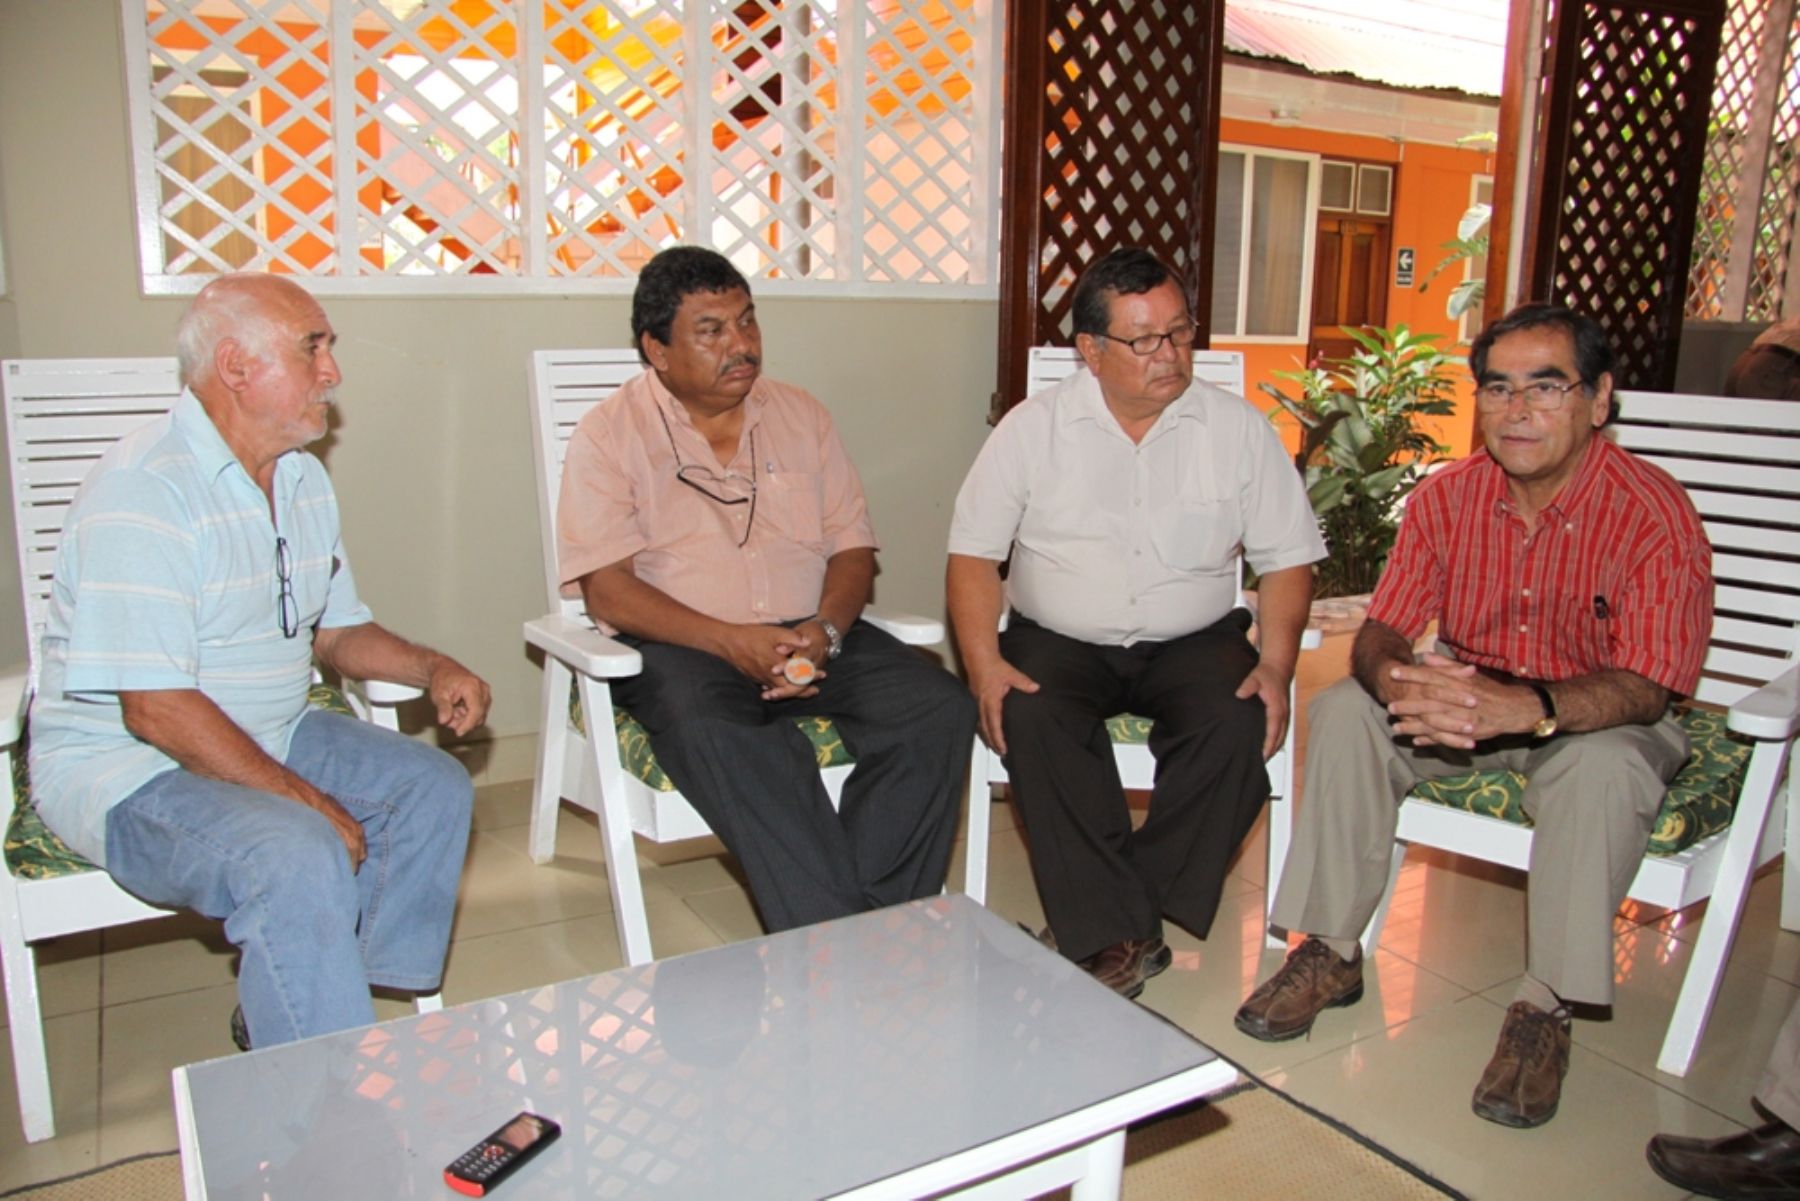 El ministro de Salud, Óscar Ugarte, se reunió hoy con dirigentes mineros en la ciudad de Puerto Maldonado, en Madre de Dios. Foto: Minsa.